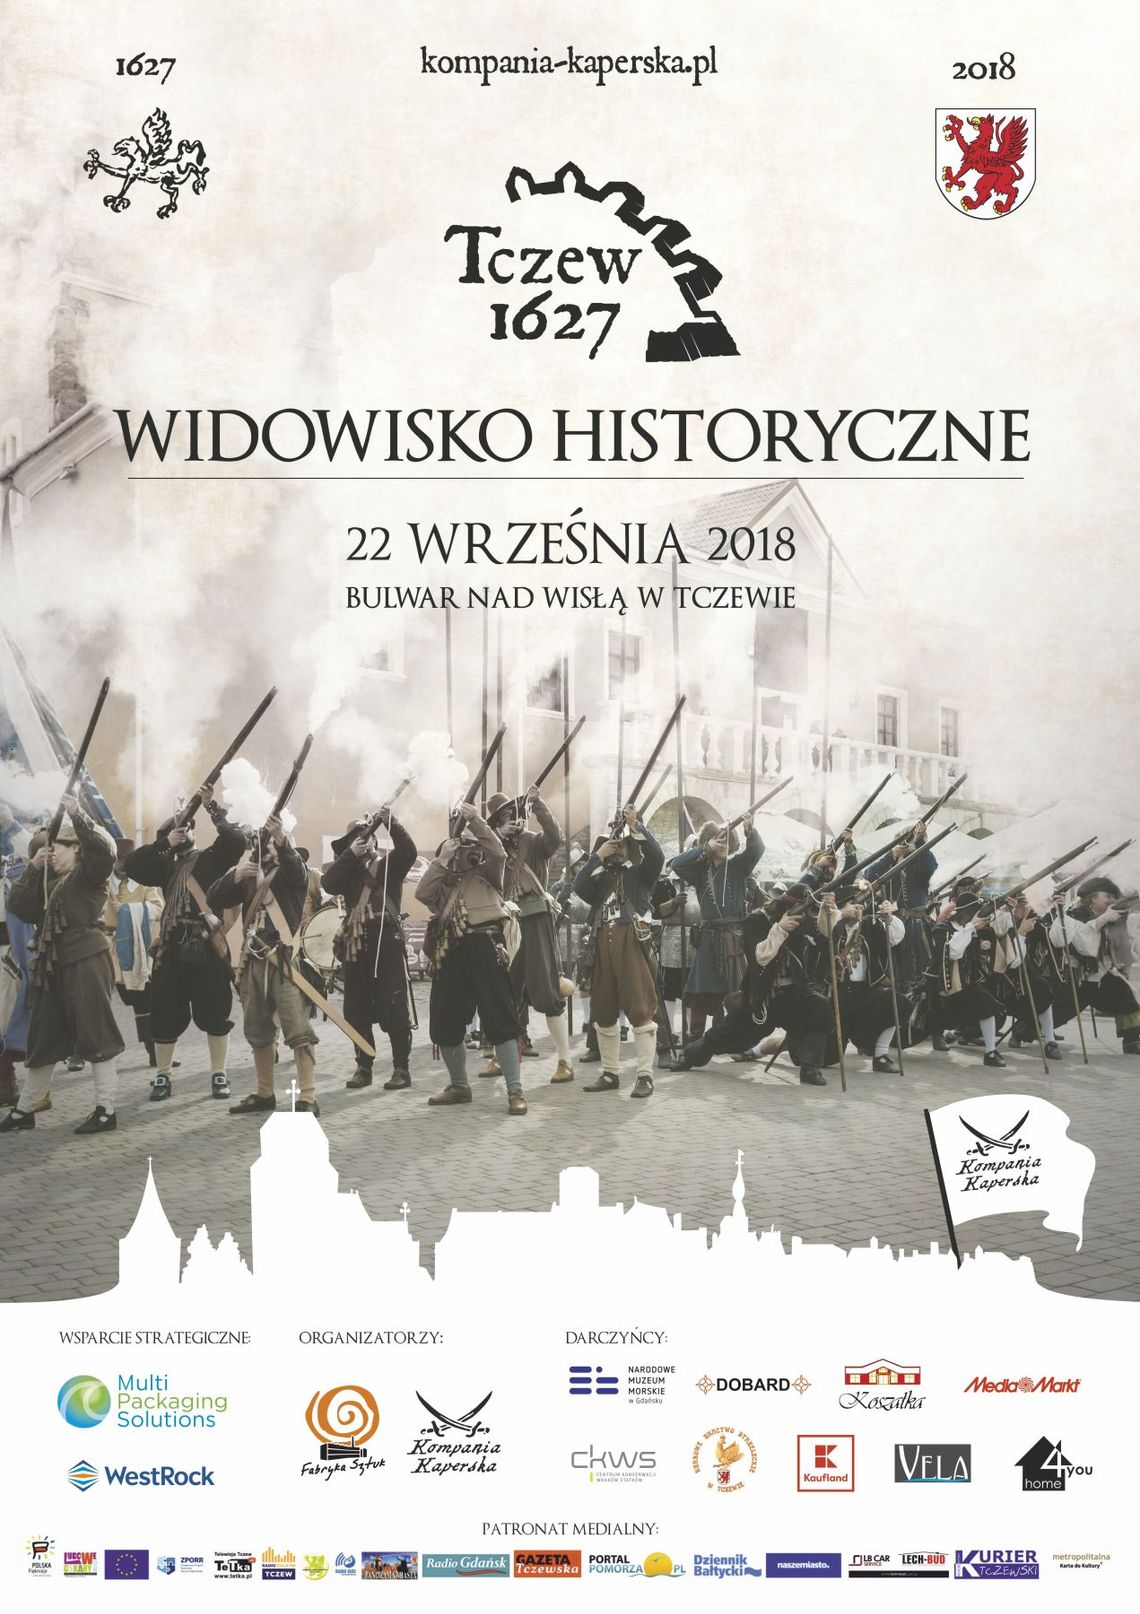 Widowisko historyczne "Tczew 1627"